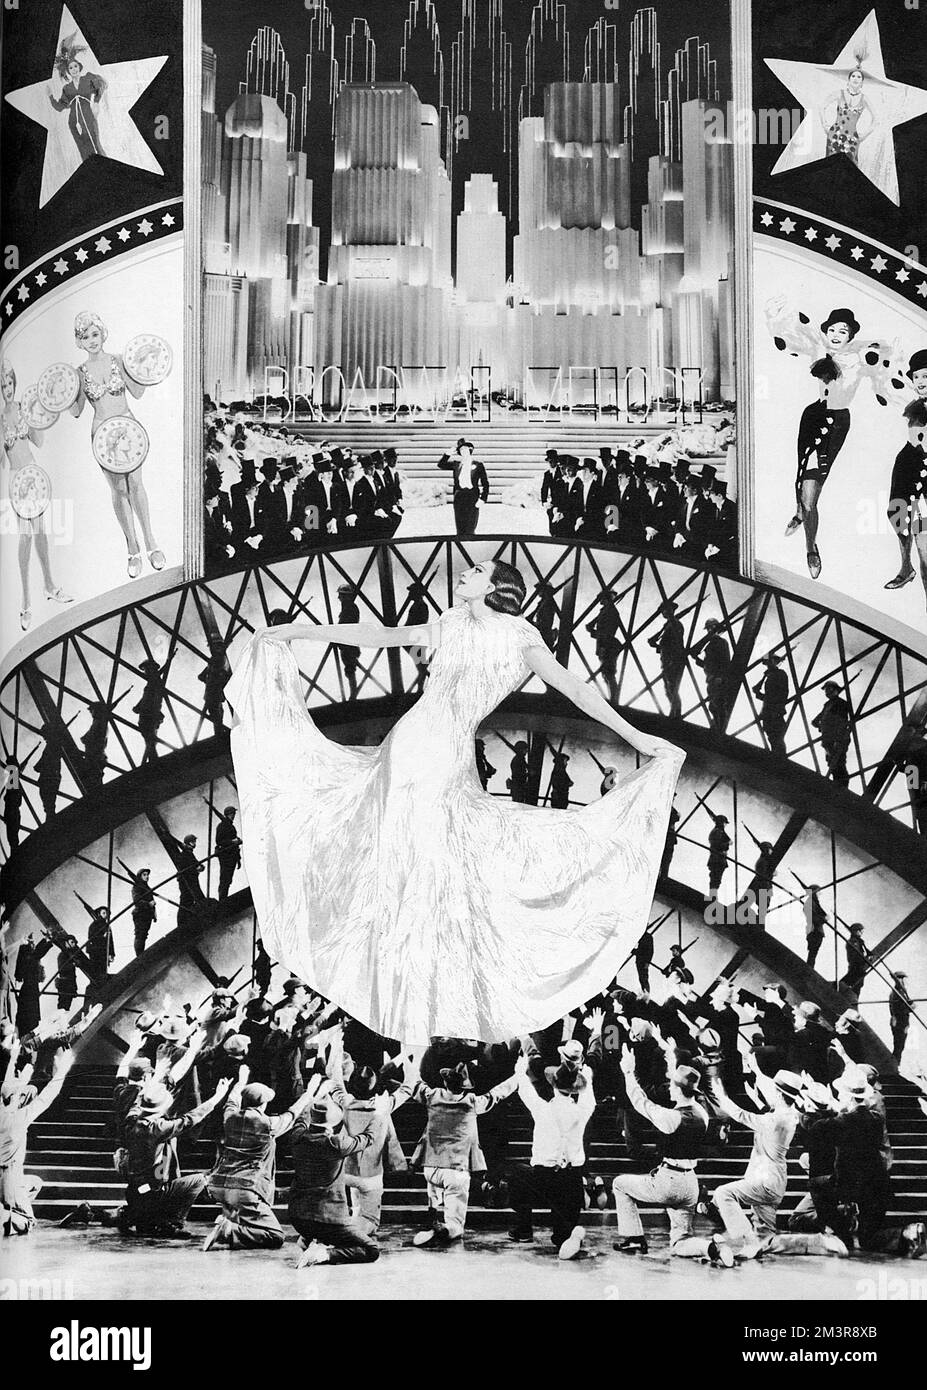 Eine Bühnenmontage von Busby Berkeley, die im Magazin London Life zu einer Filmsaison im National Film Theatre im Jahr 1965 vorgestellt wurde. Datum: 1965 Stockfoto